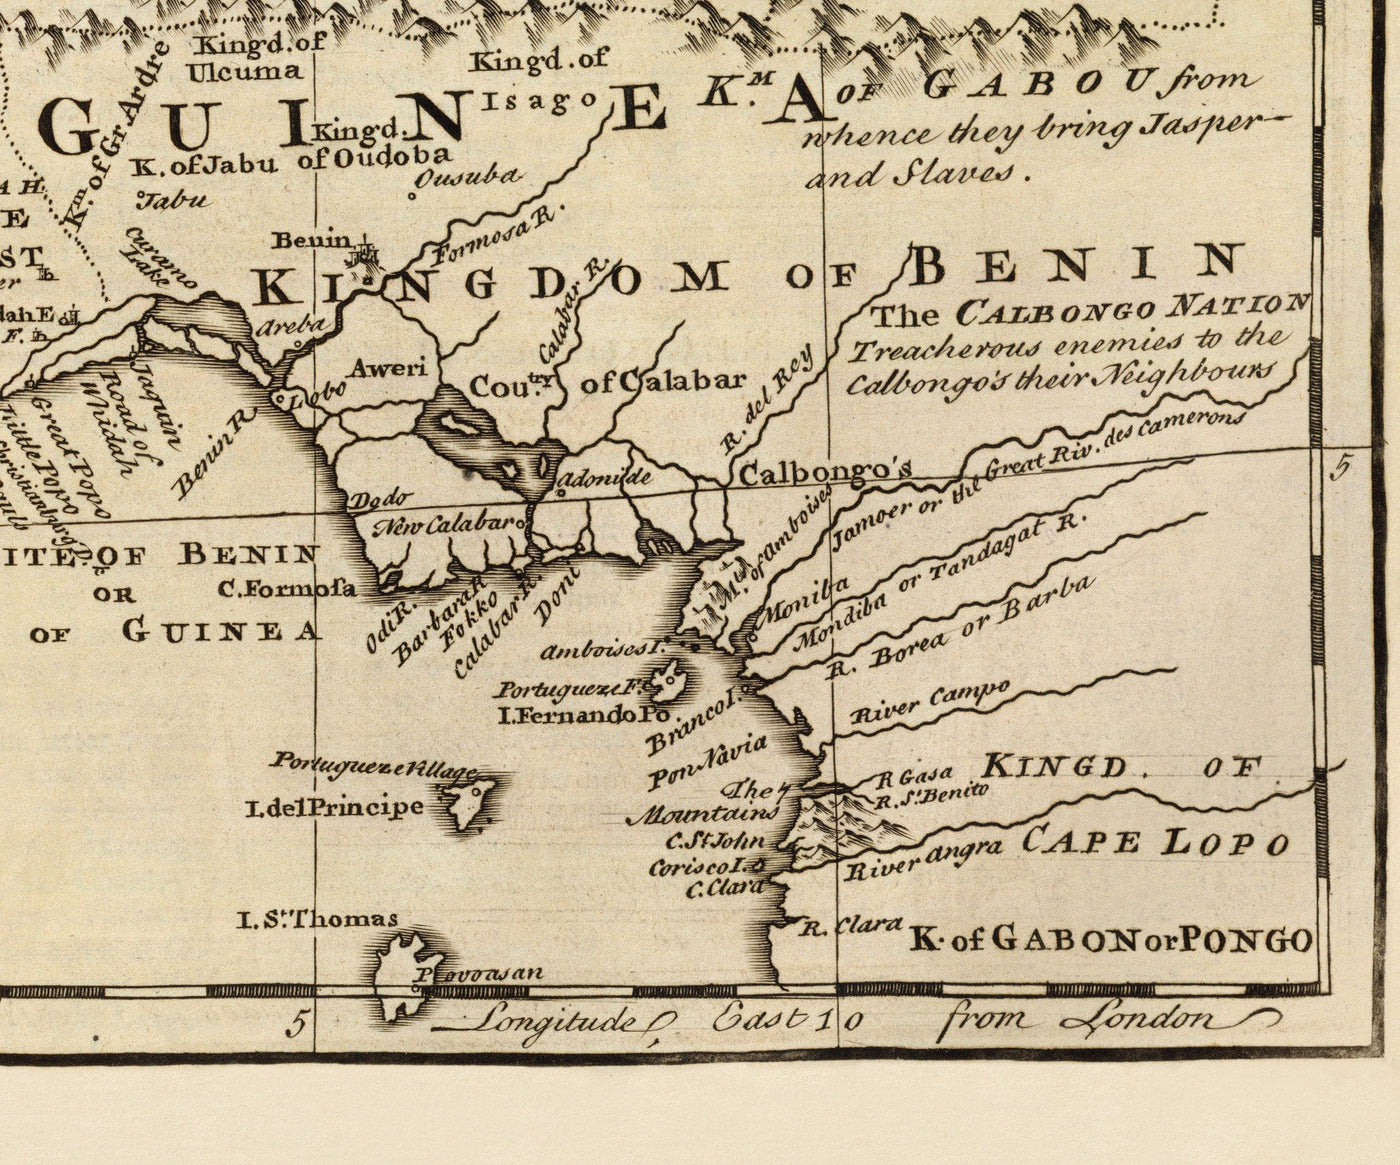 Mapa antiguo de Negroland, 1747 por Bowen - África occidental pre-colonial - Comercio de esclavos, Costa de Marfil, Costa de Oro